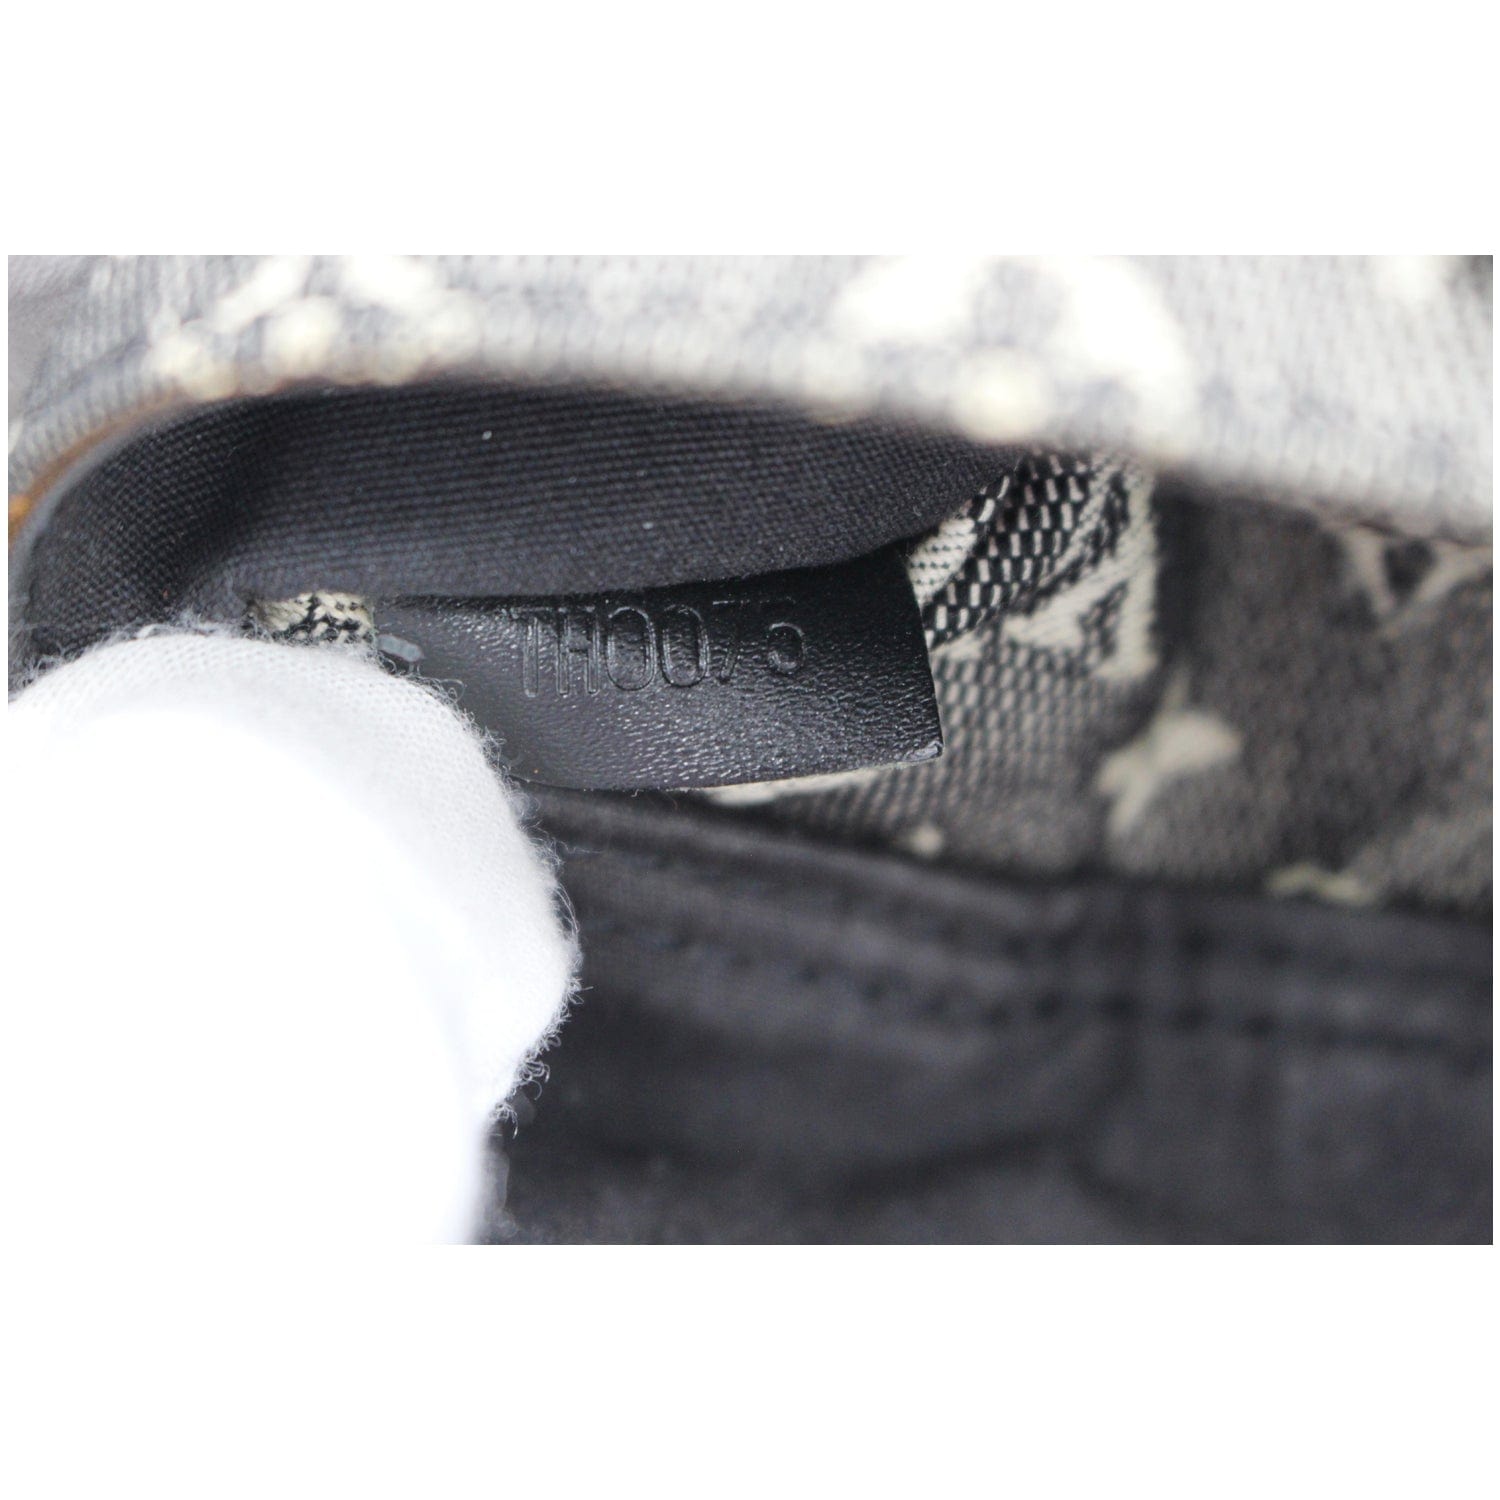 Cloth mini bag Louis Vuitton Black in Cloth - 24519076